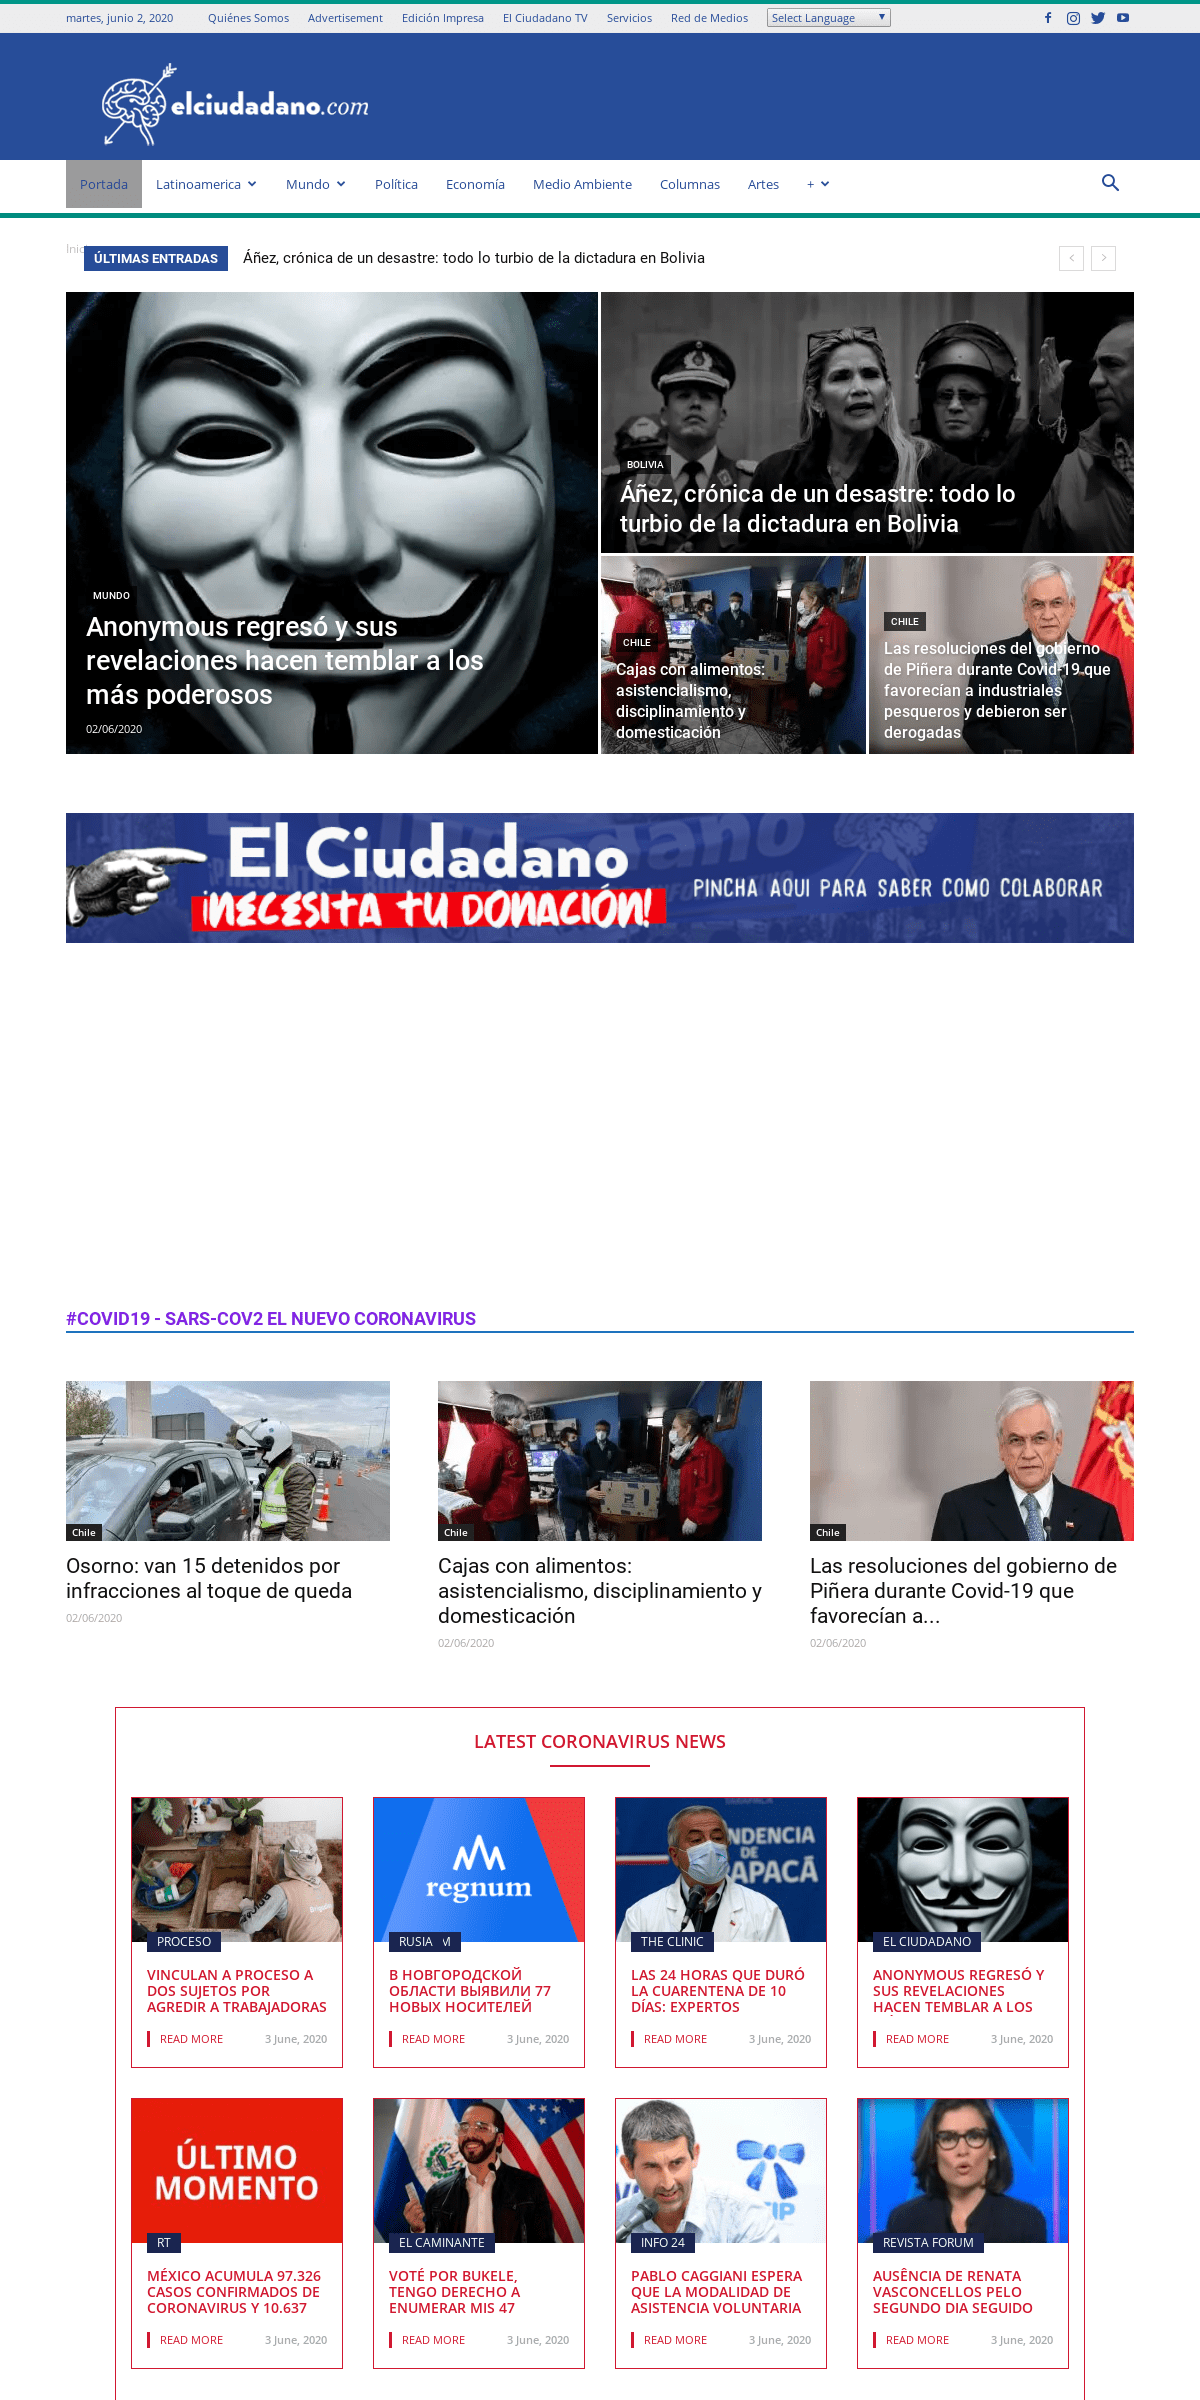 A complete backup of elciudadano.com